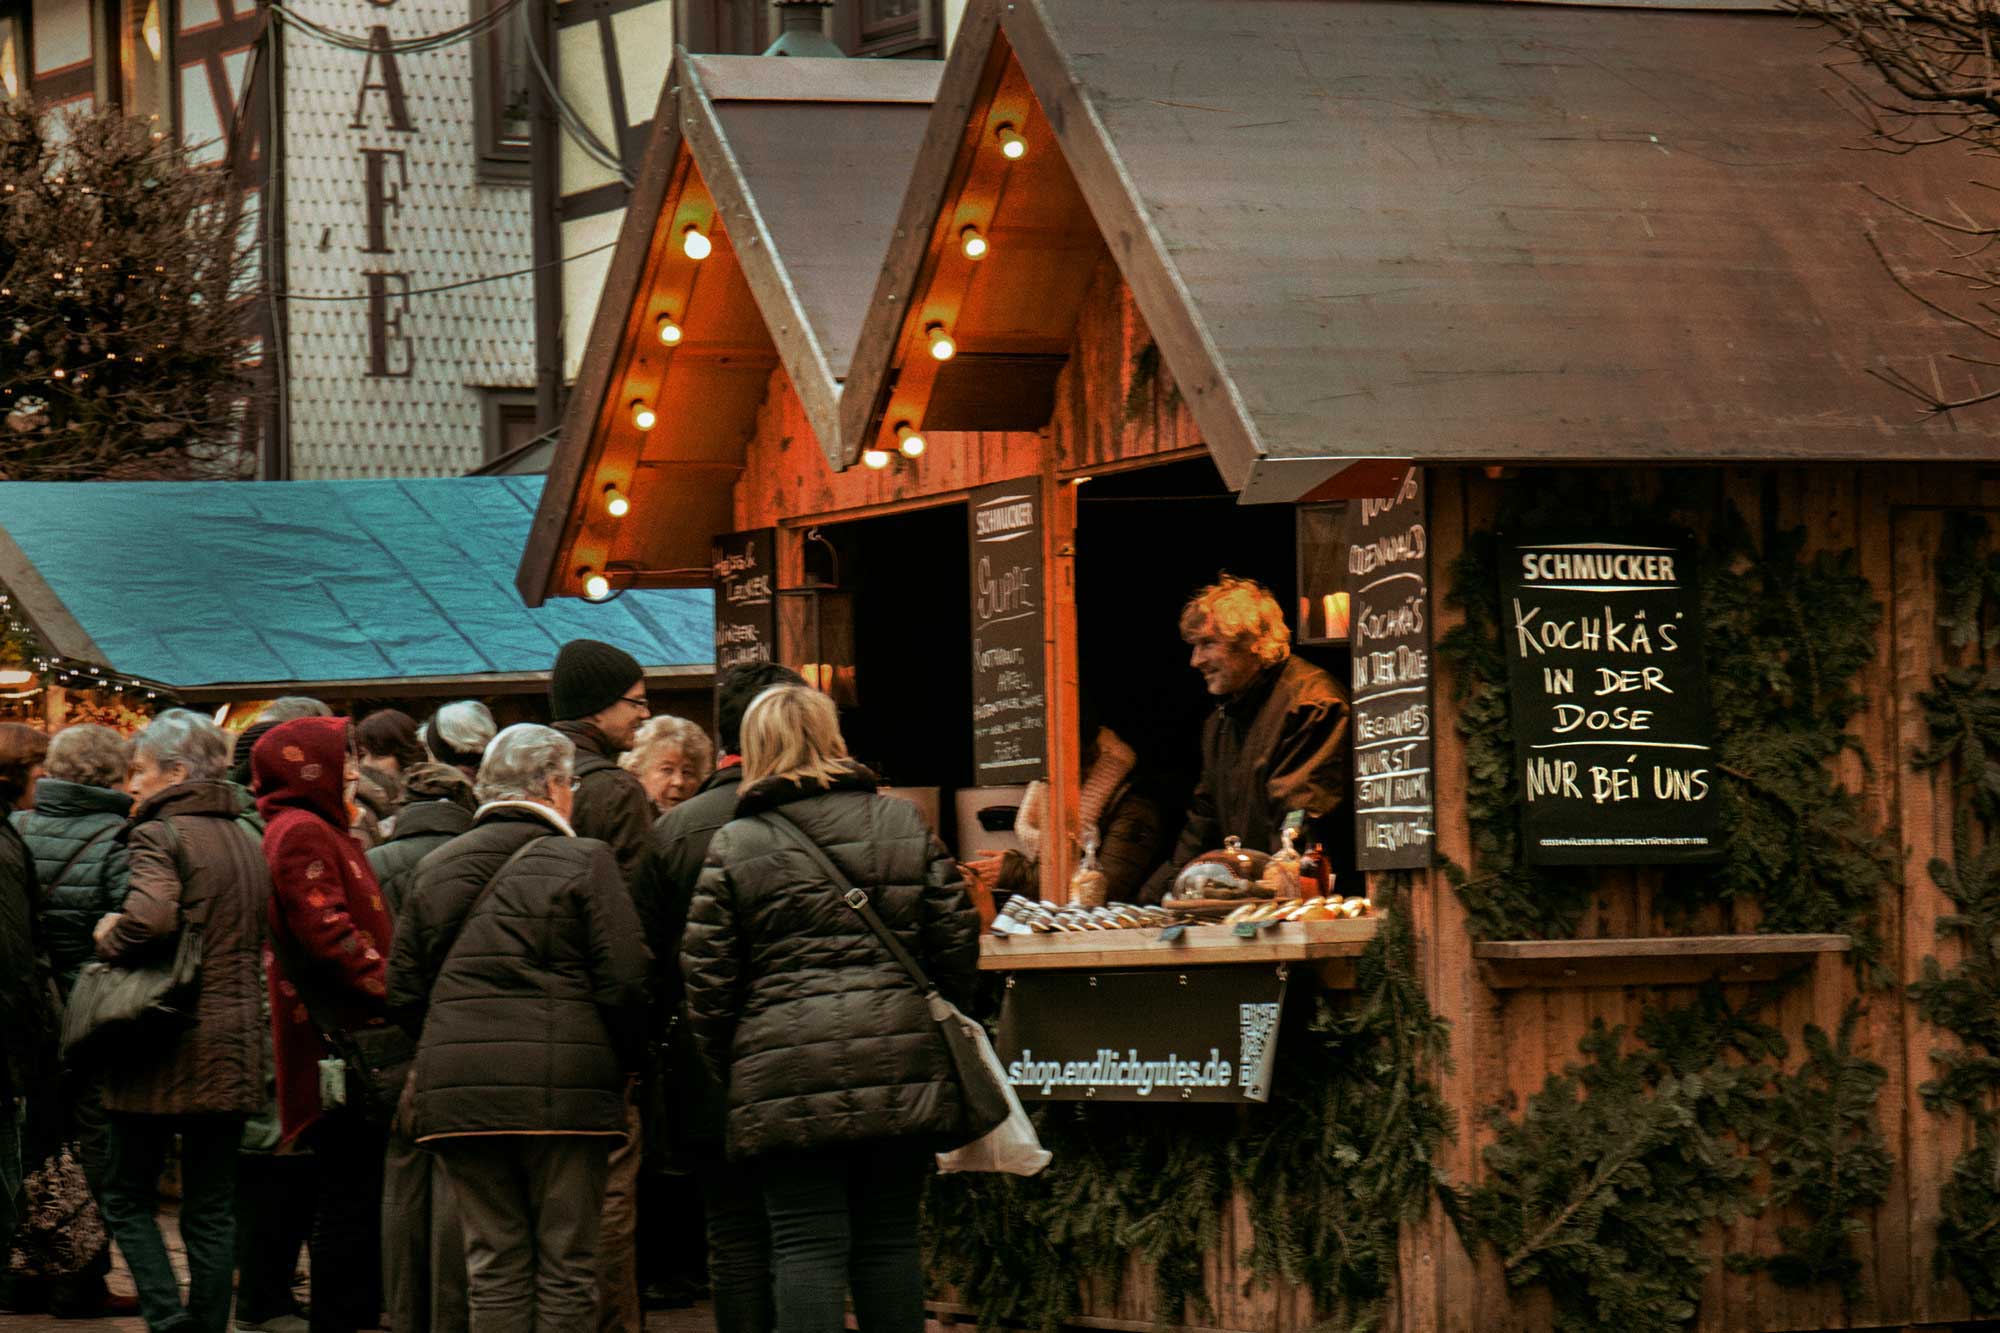 Weihnachtsmarkt in Michelstadt mit Odenwälder Kochkäserei aus der Dose